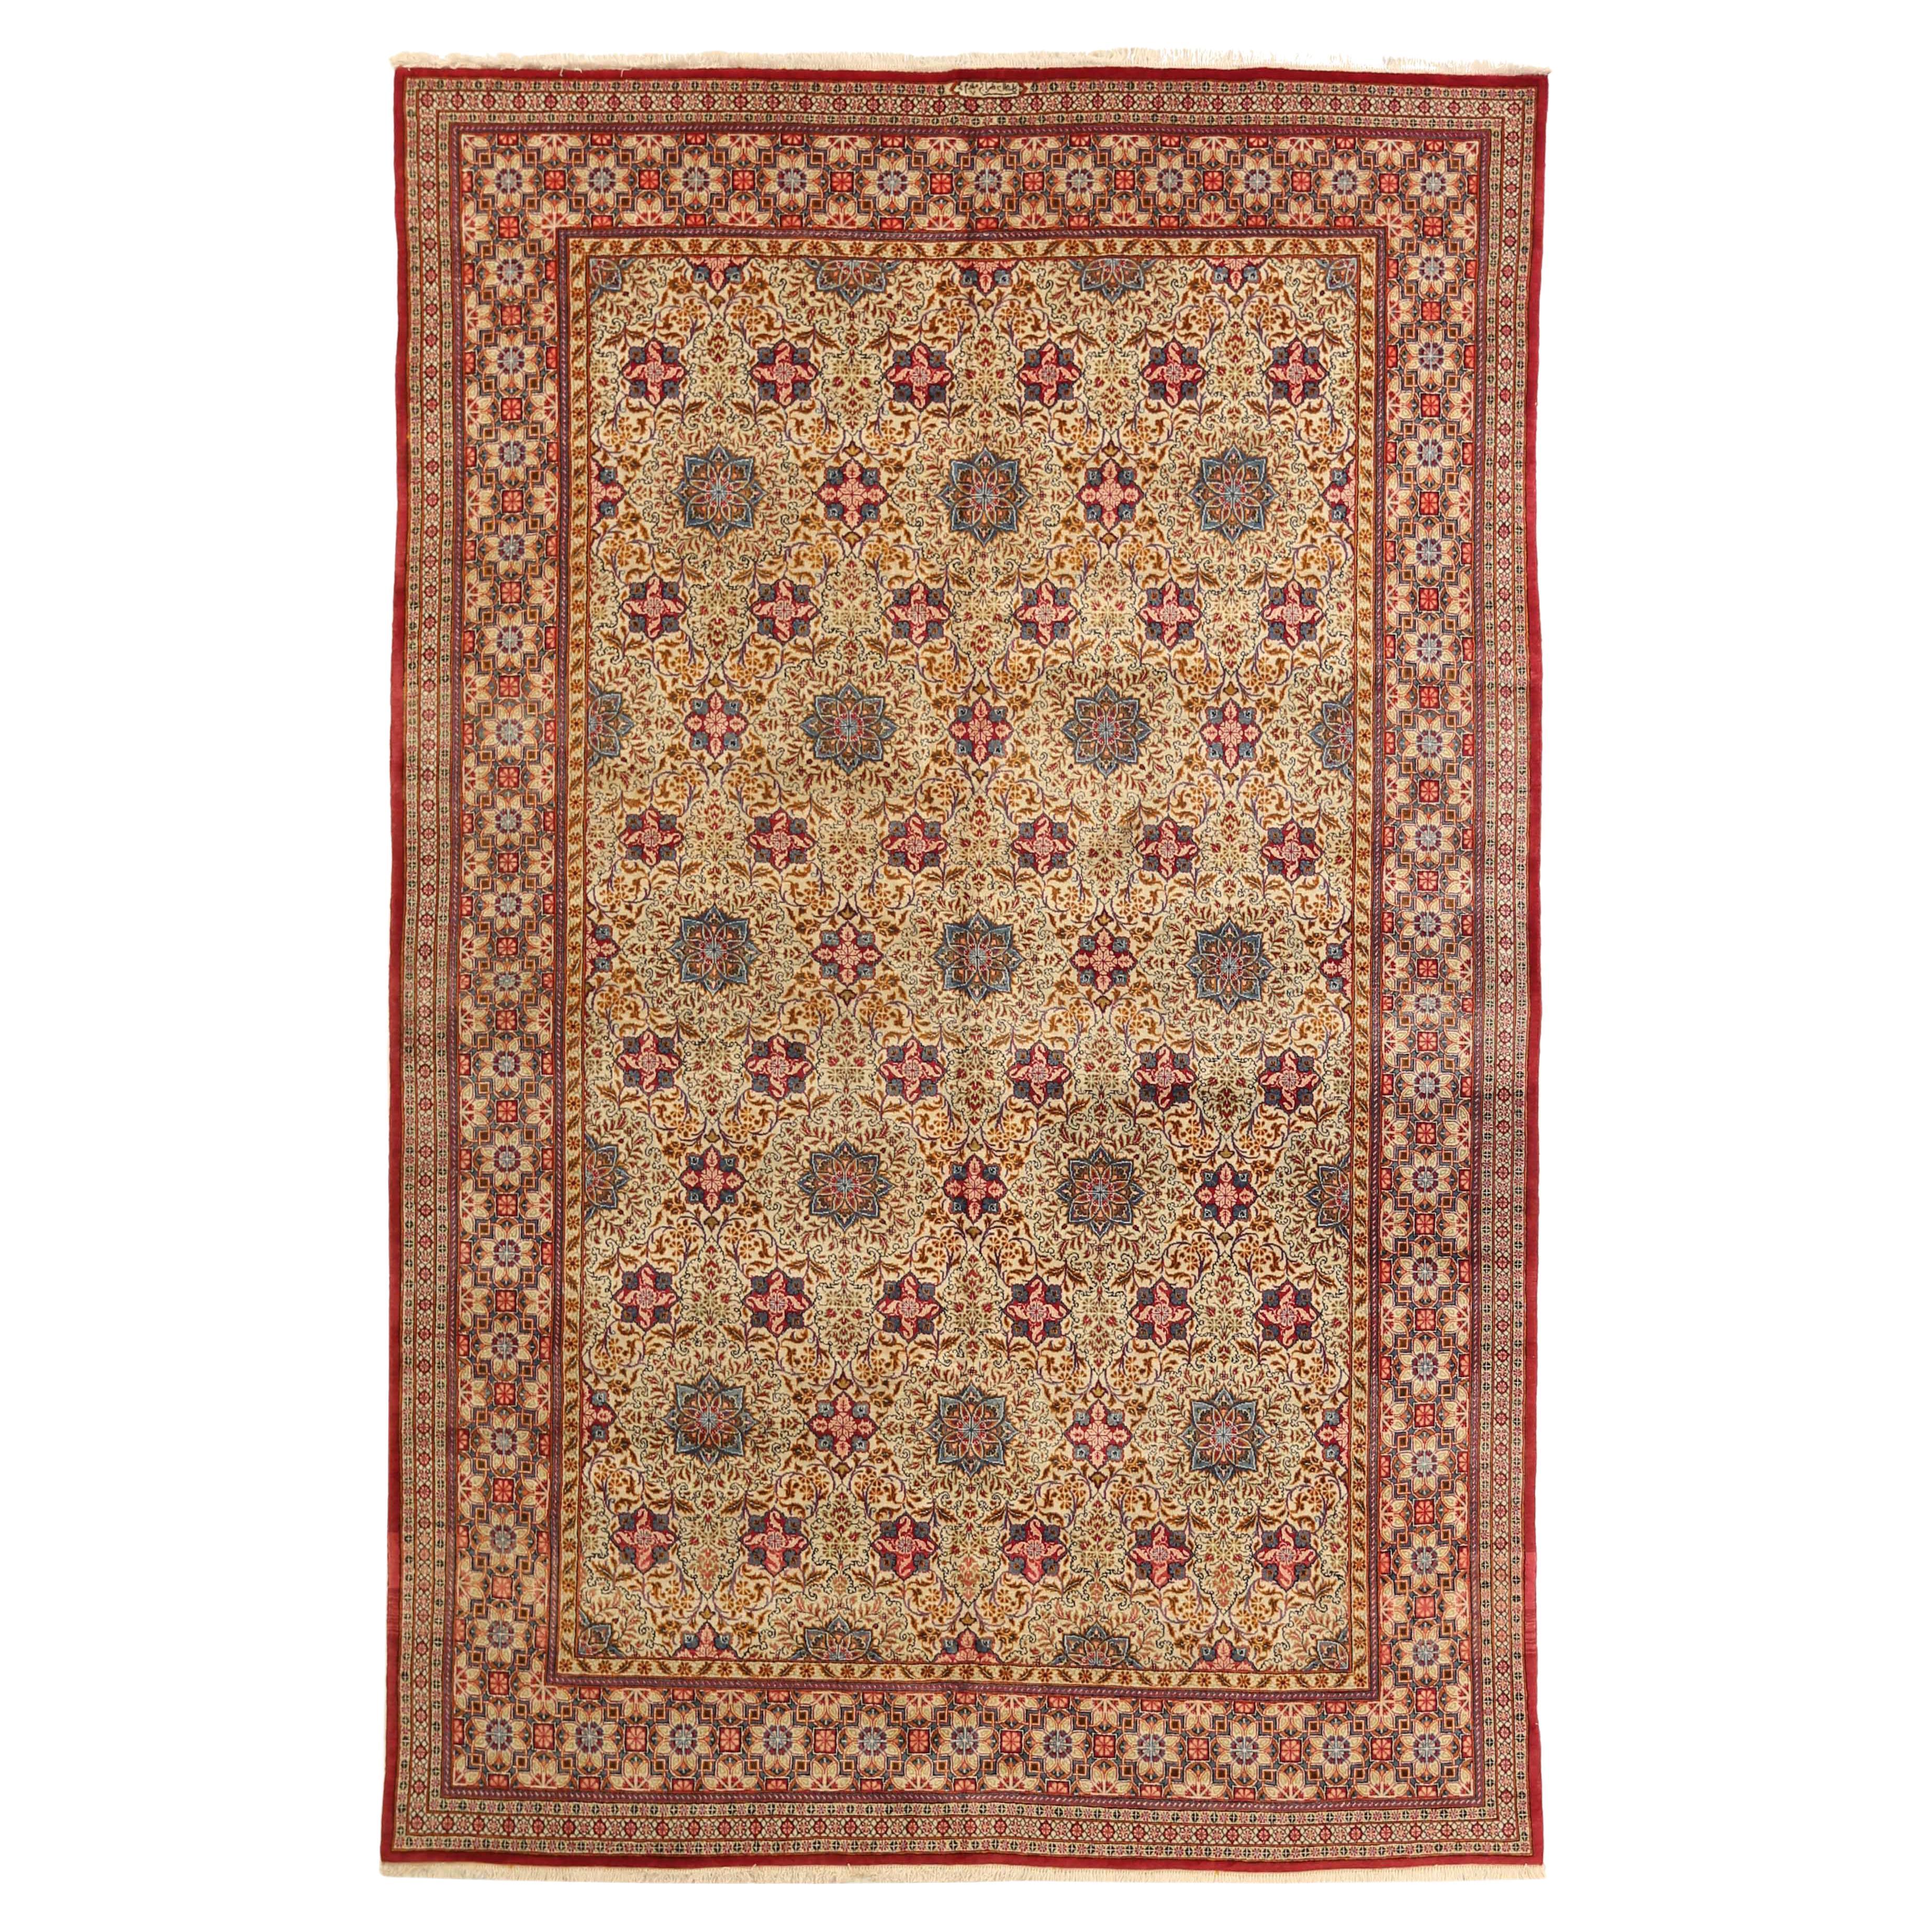 Persischer Teppich im Kashan-Design